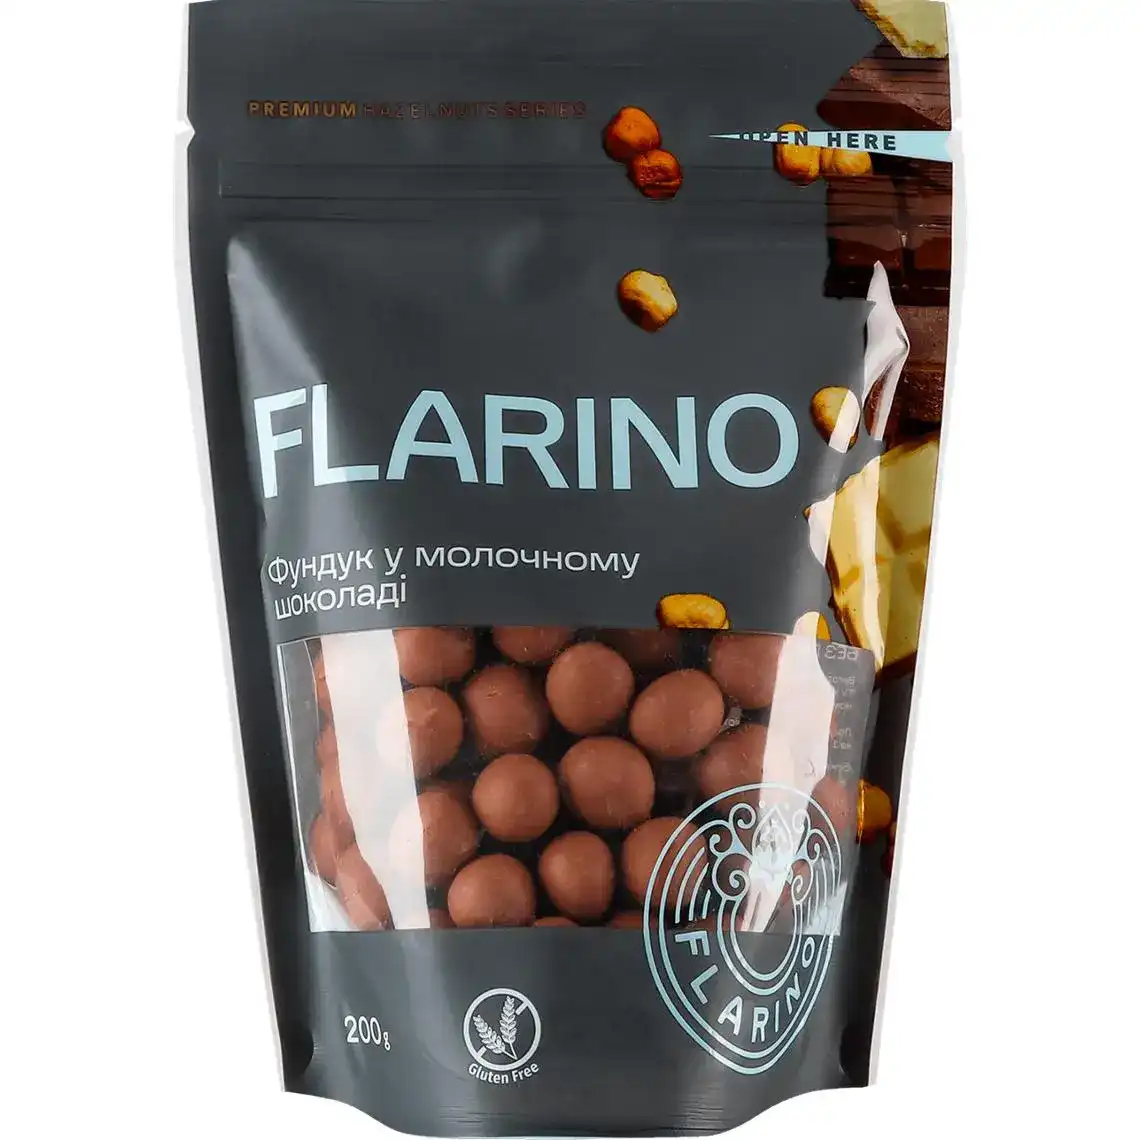 Фото 1 - Фундук Flarino у молочному шоколаді 200 г